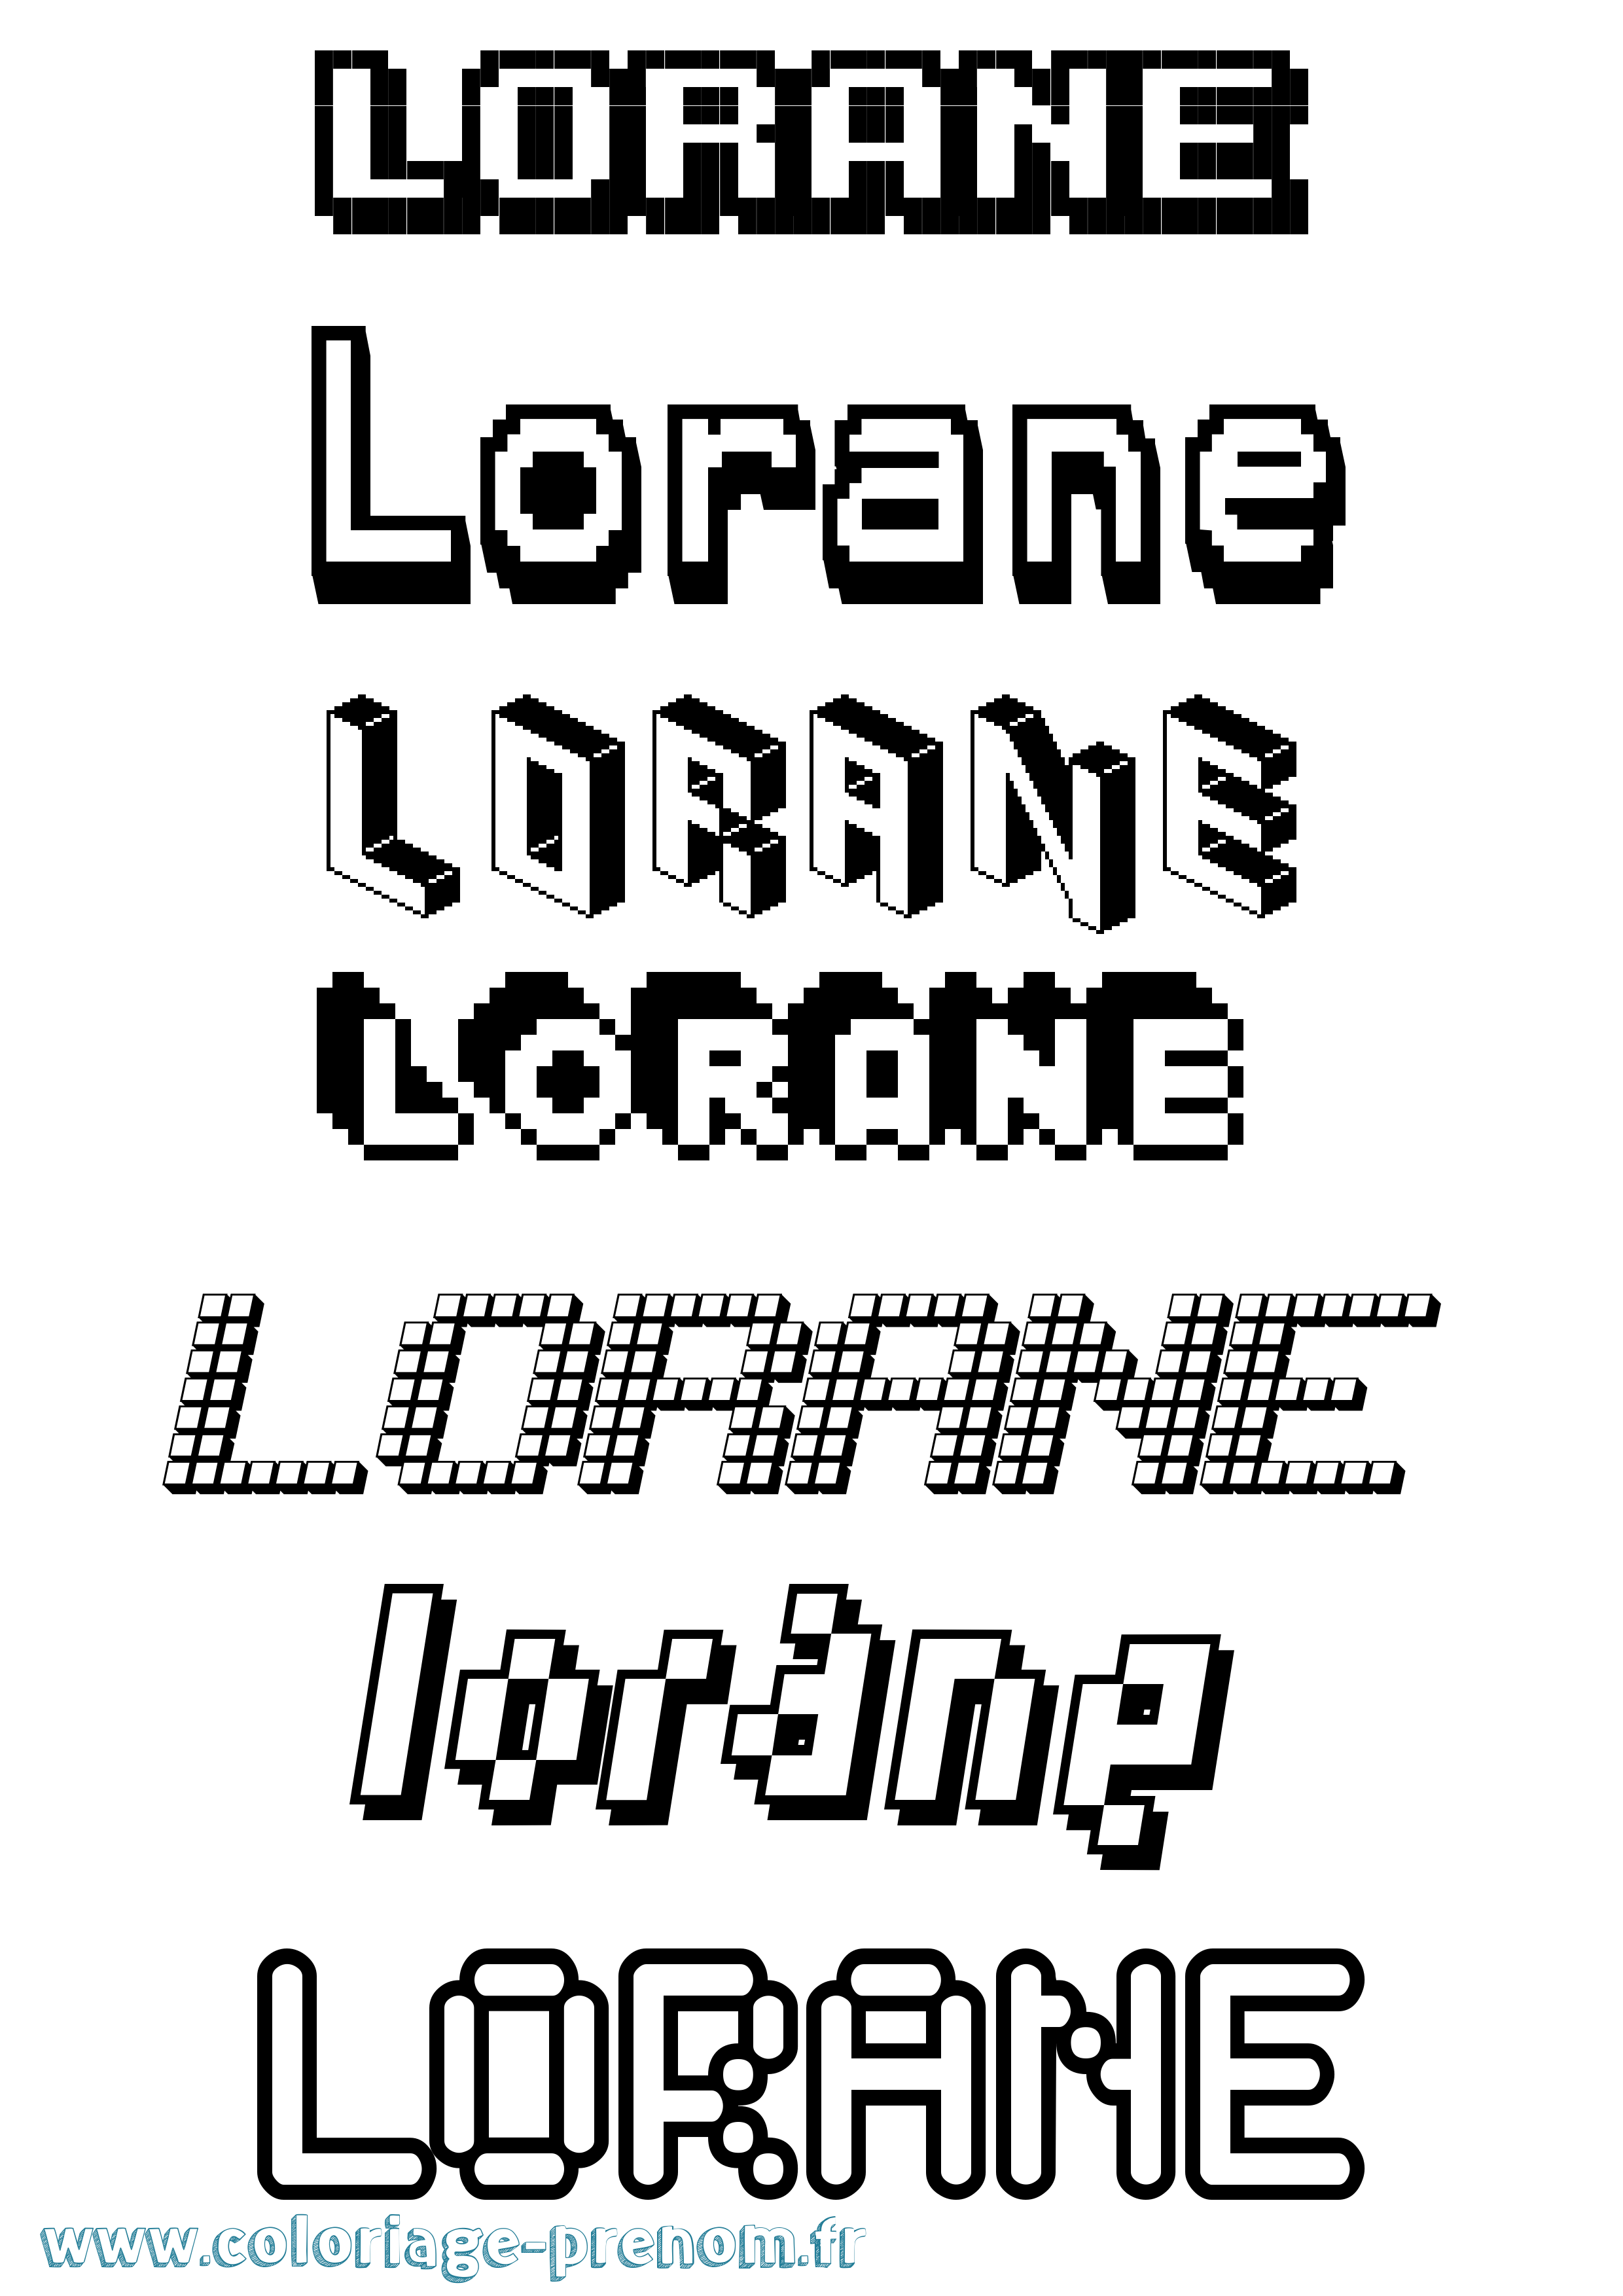 Coloriage prénom Lorane Pixel